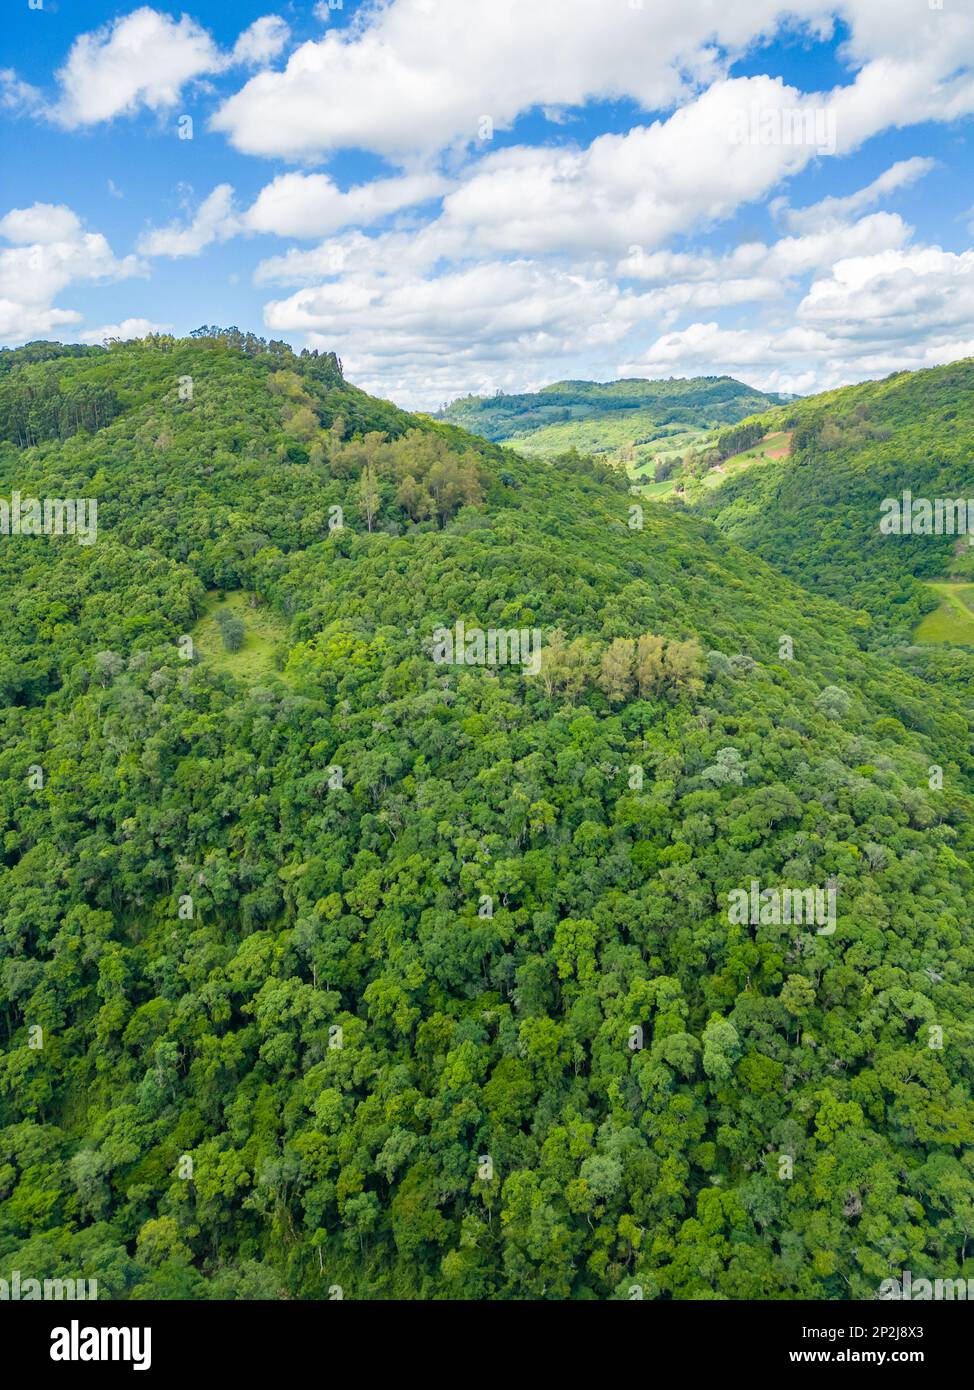 Aerial view of a forest in a valley, Otavio Rocha, Flores da Cunha, Rio Grande do Sul, Brazil Stock Photo